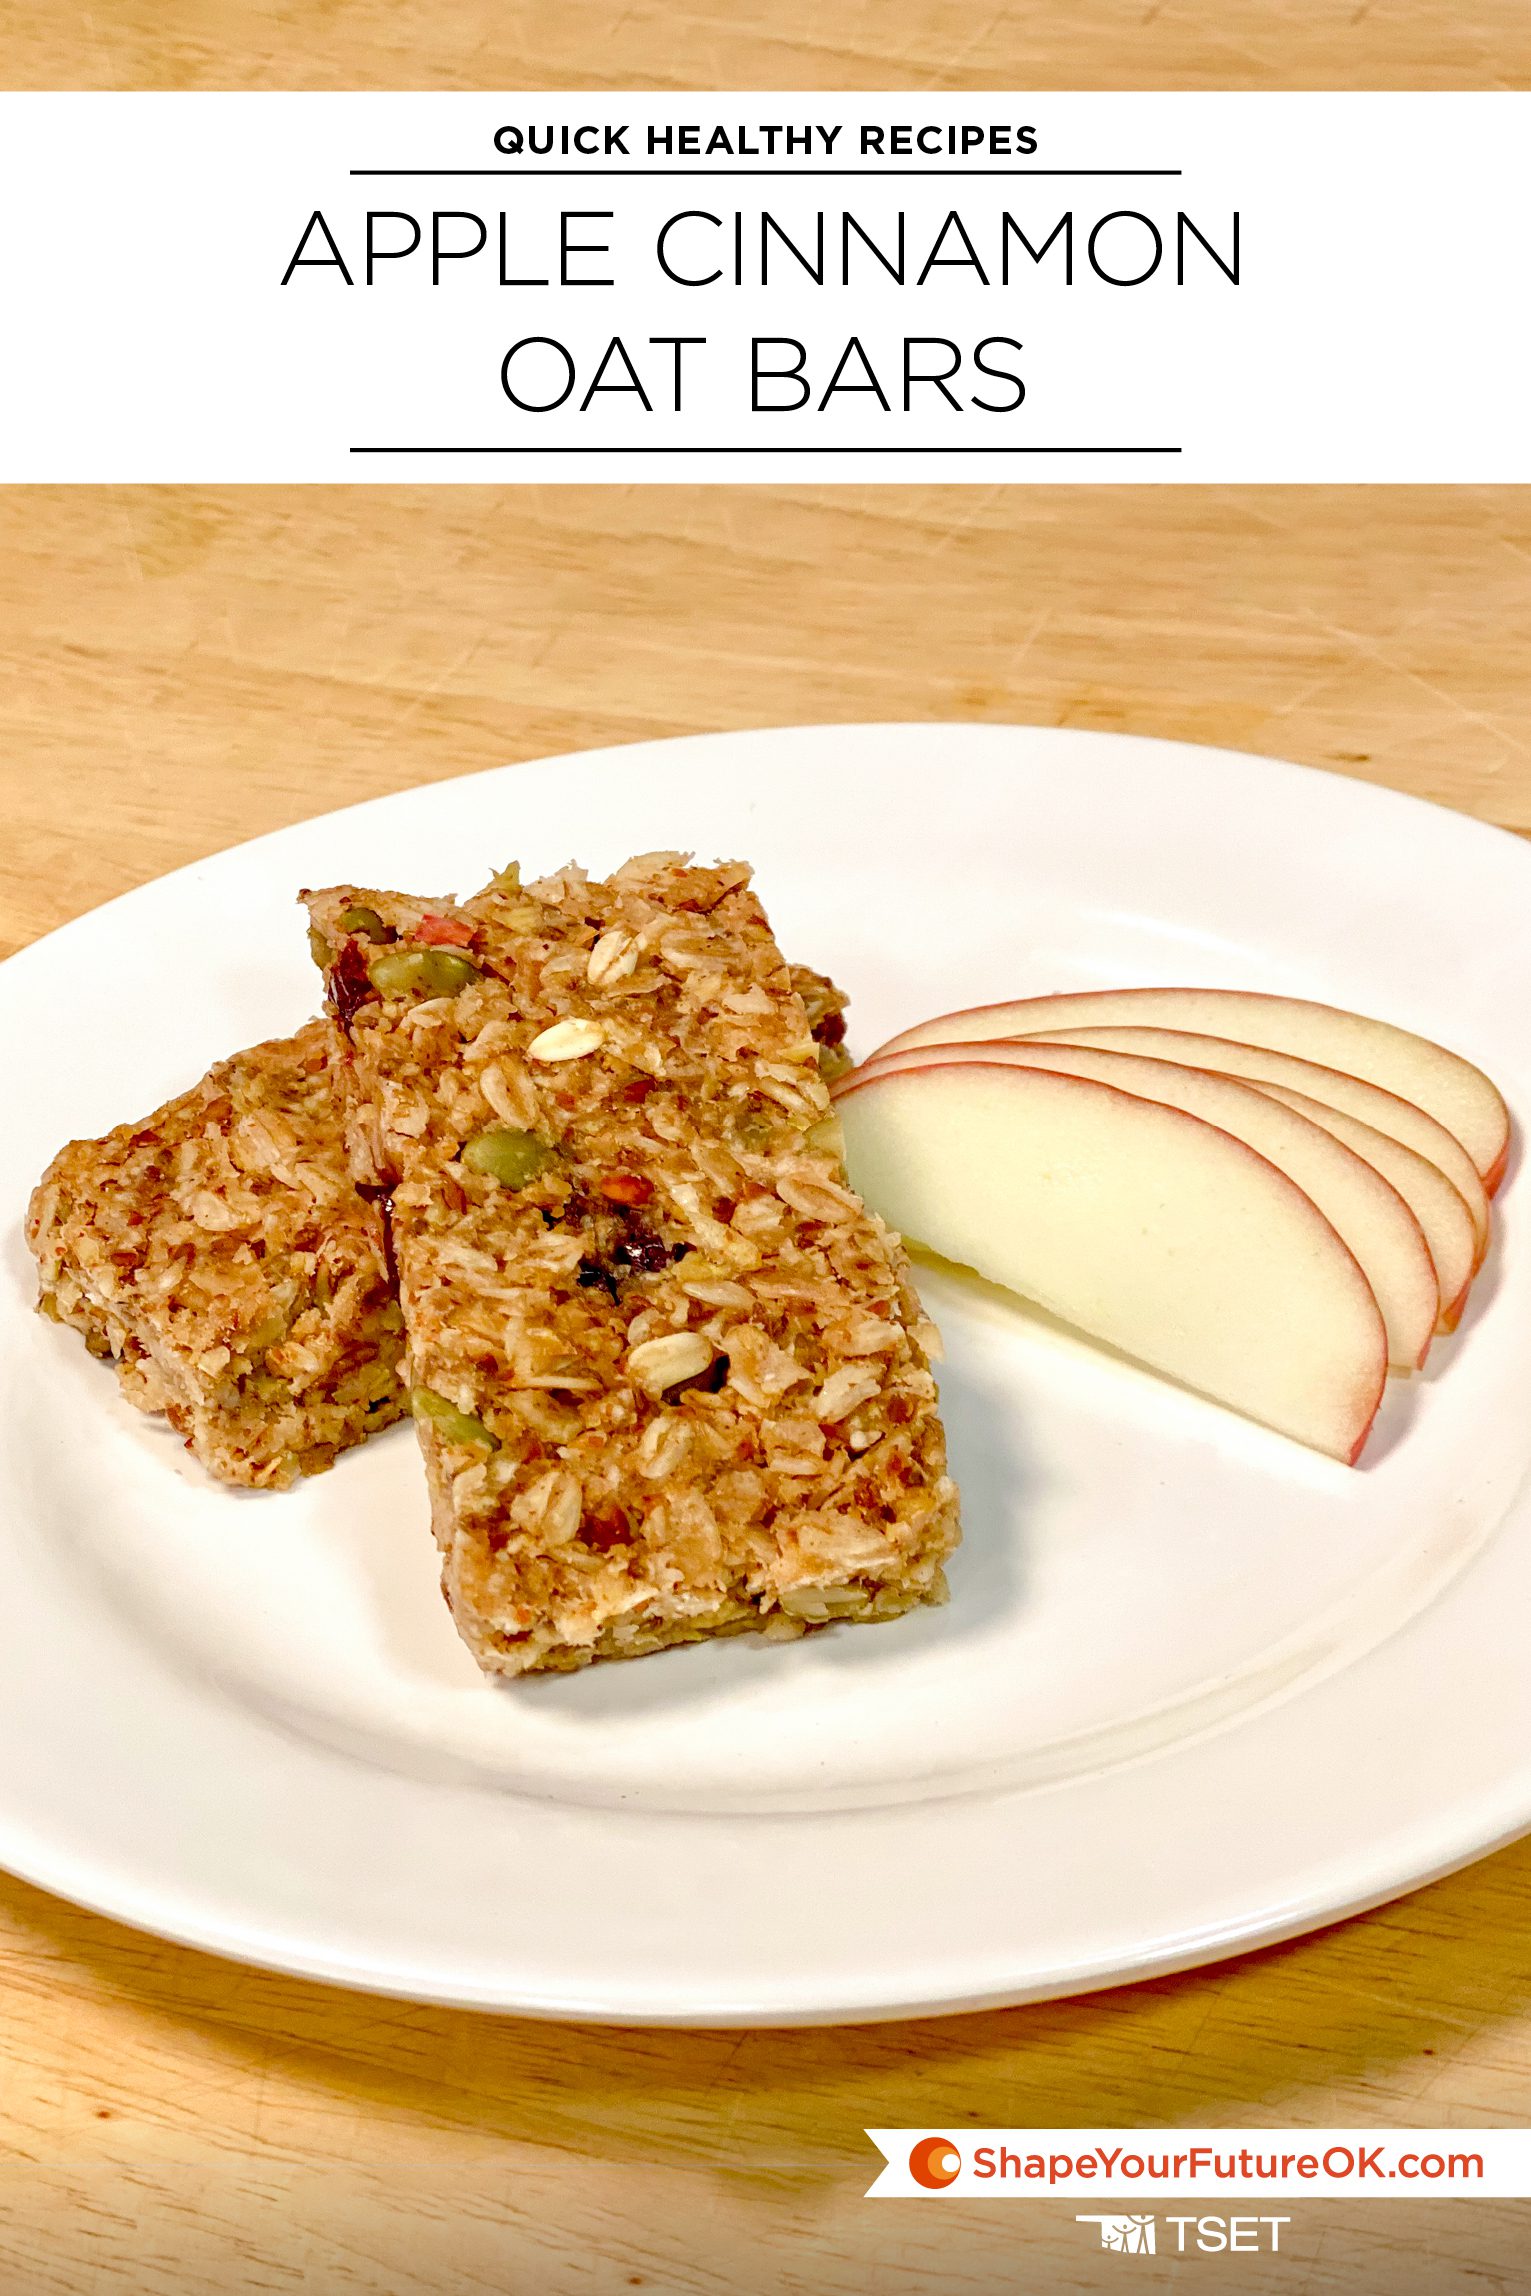 Apple cinnamon oat bars